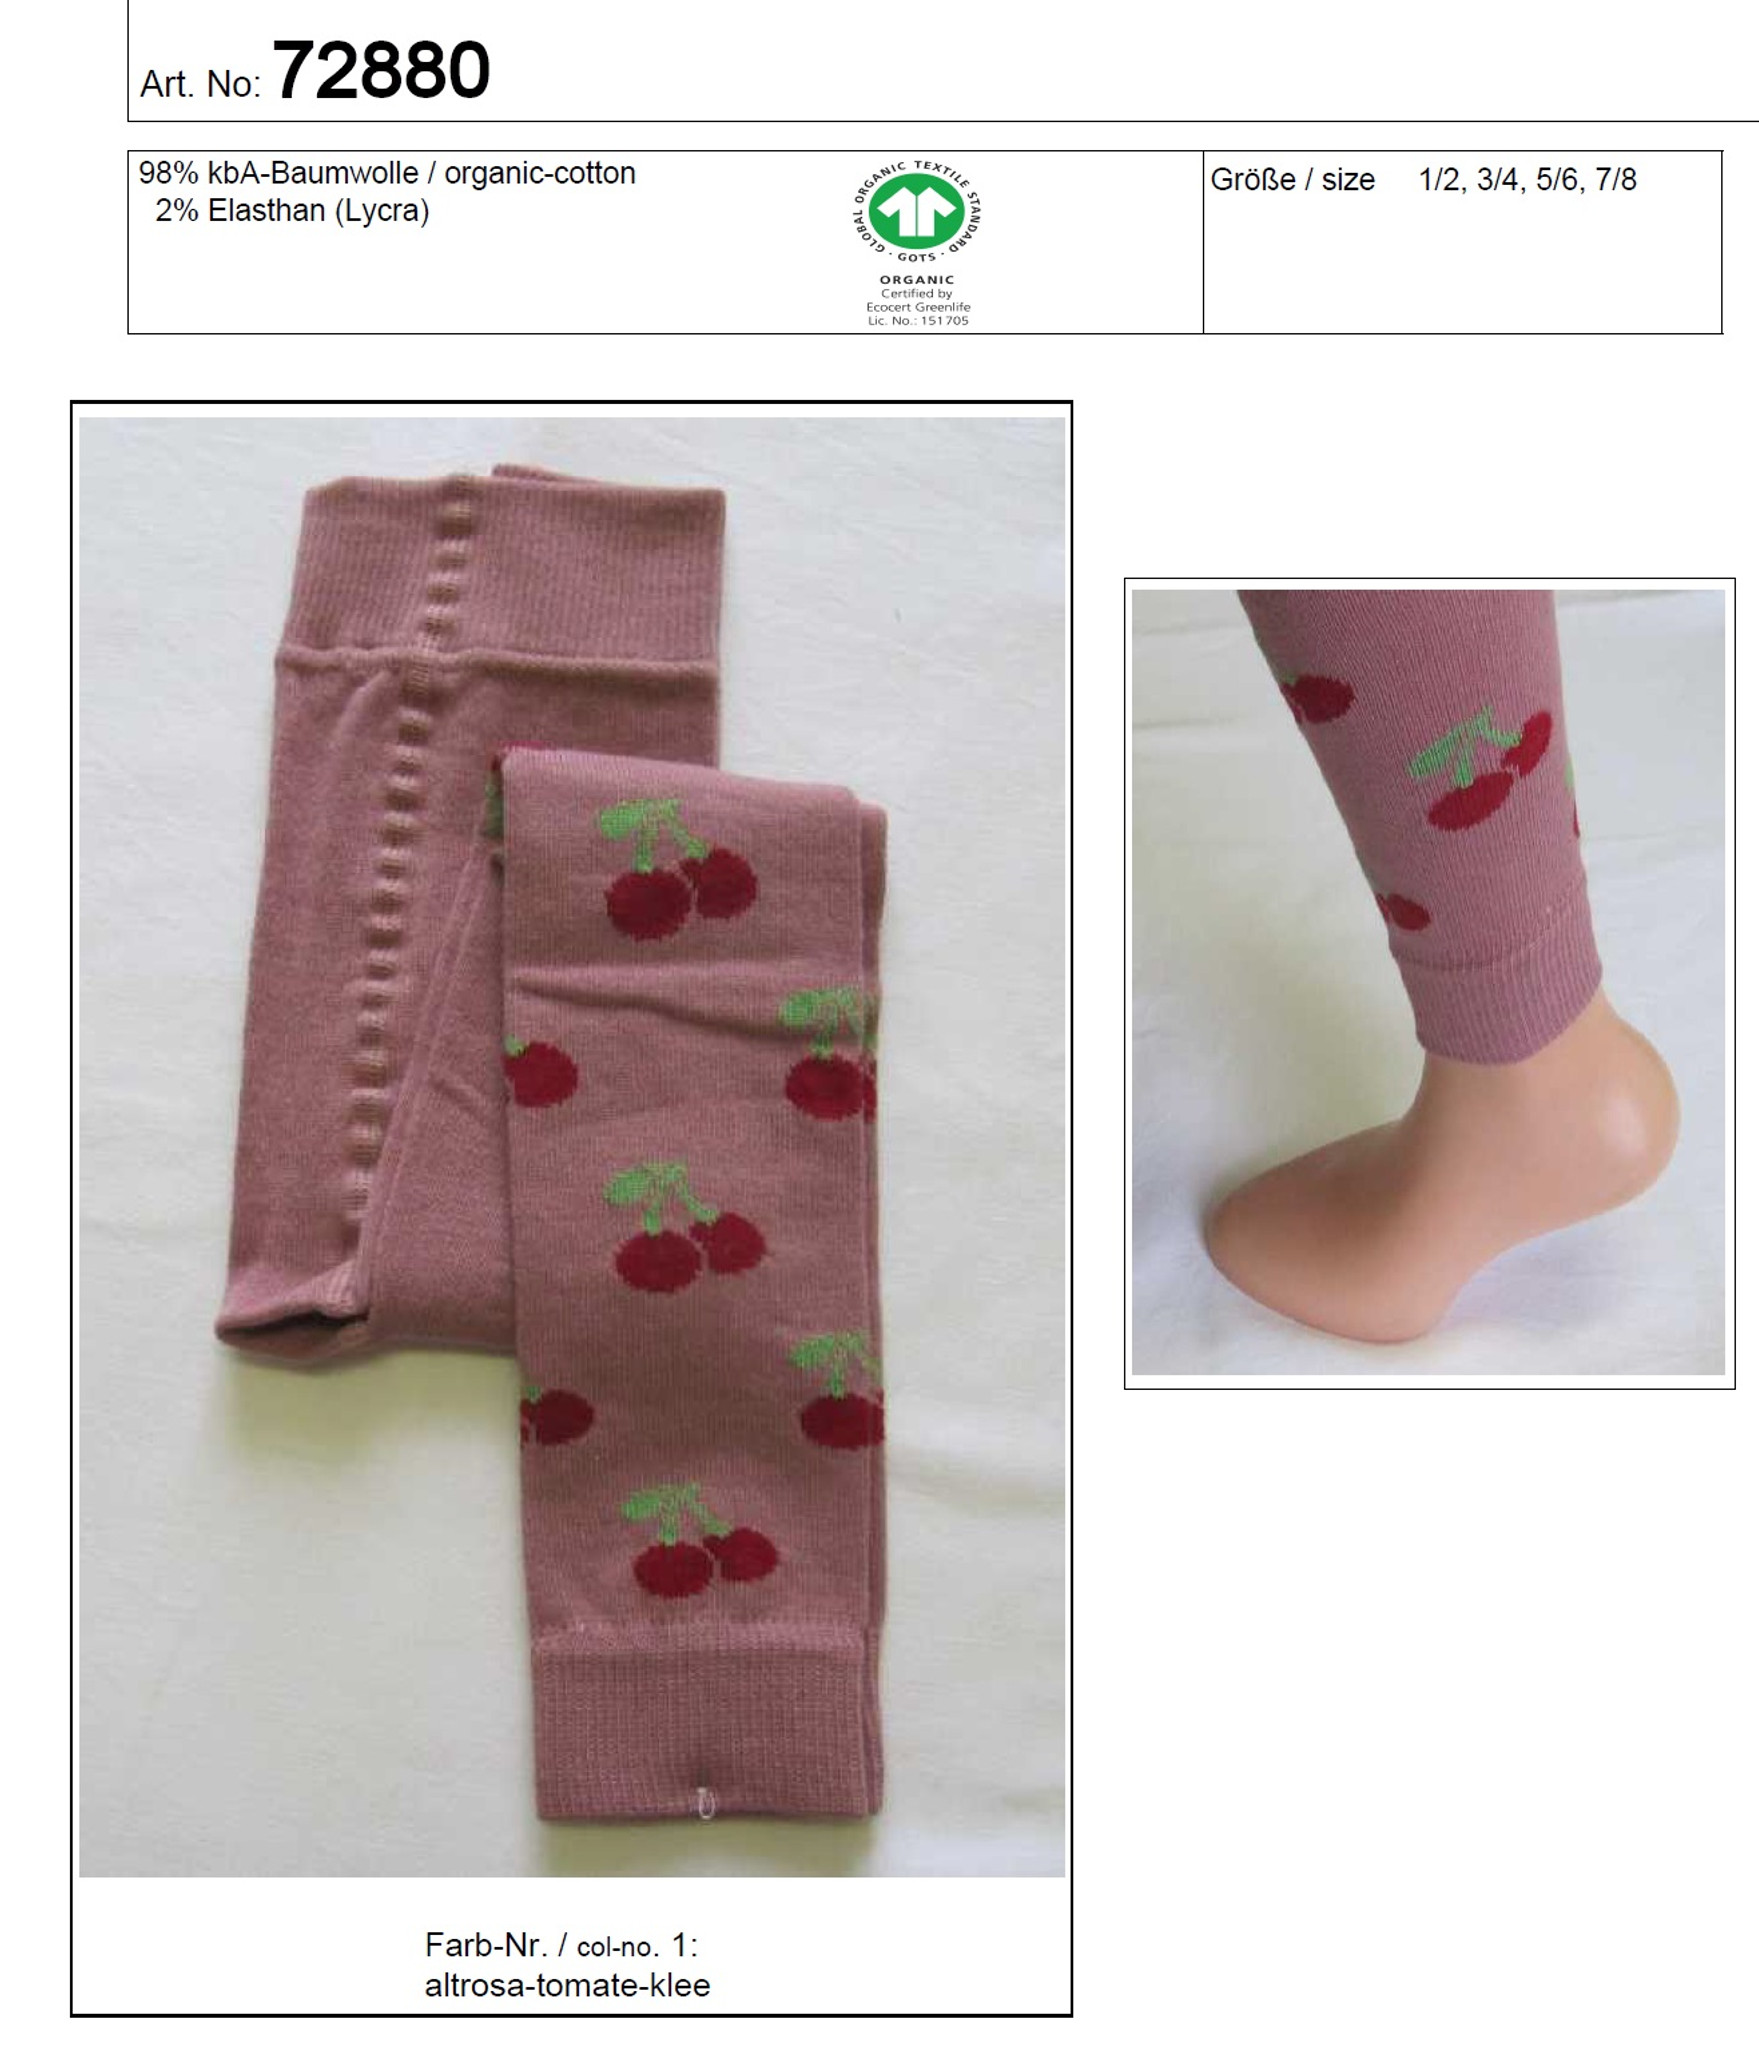 Leggings - Buy leggings for kids in organic cotton